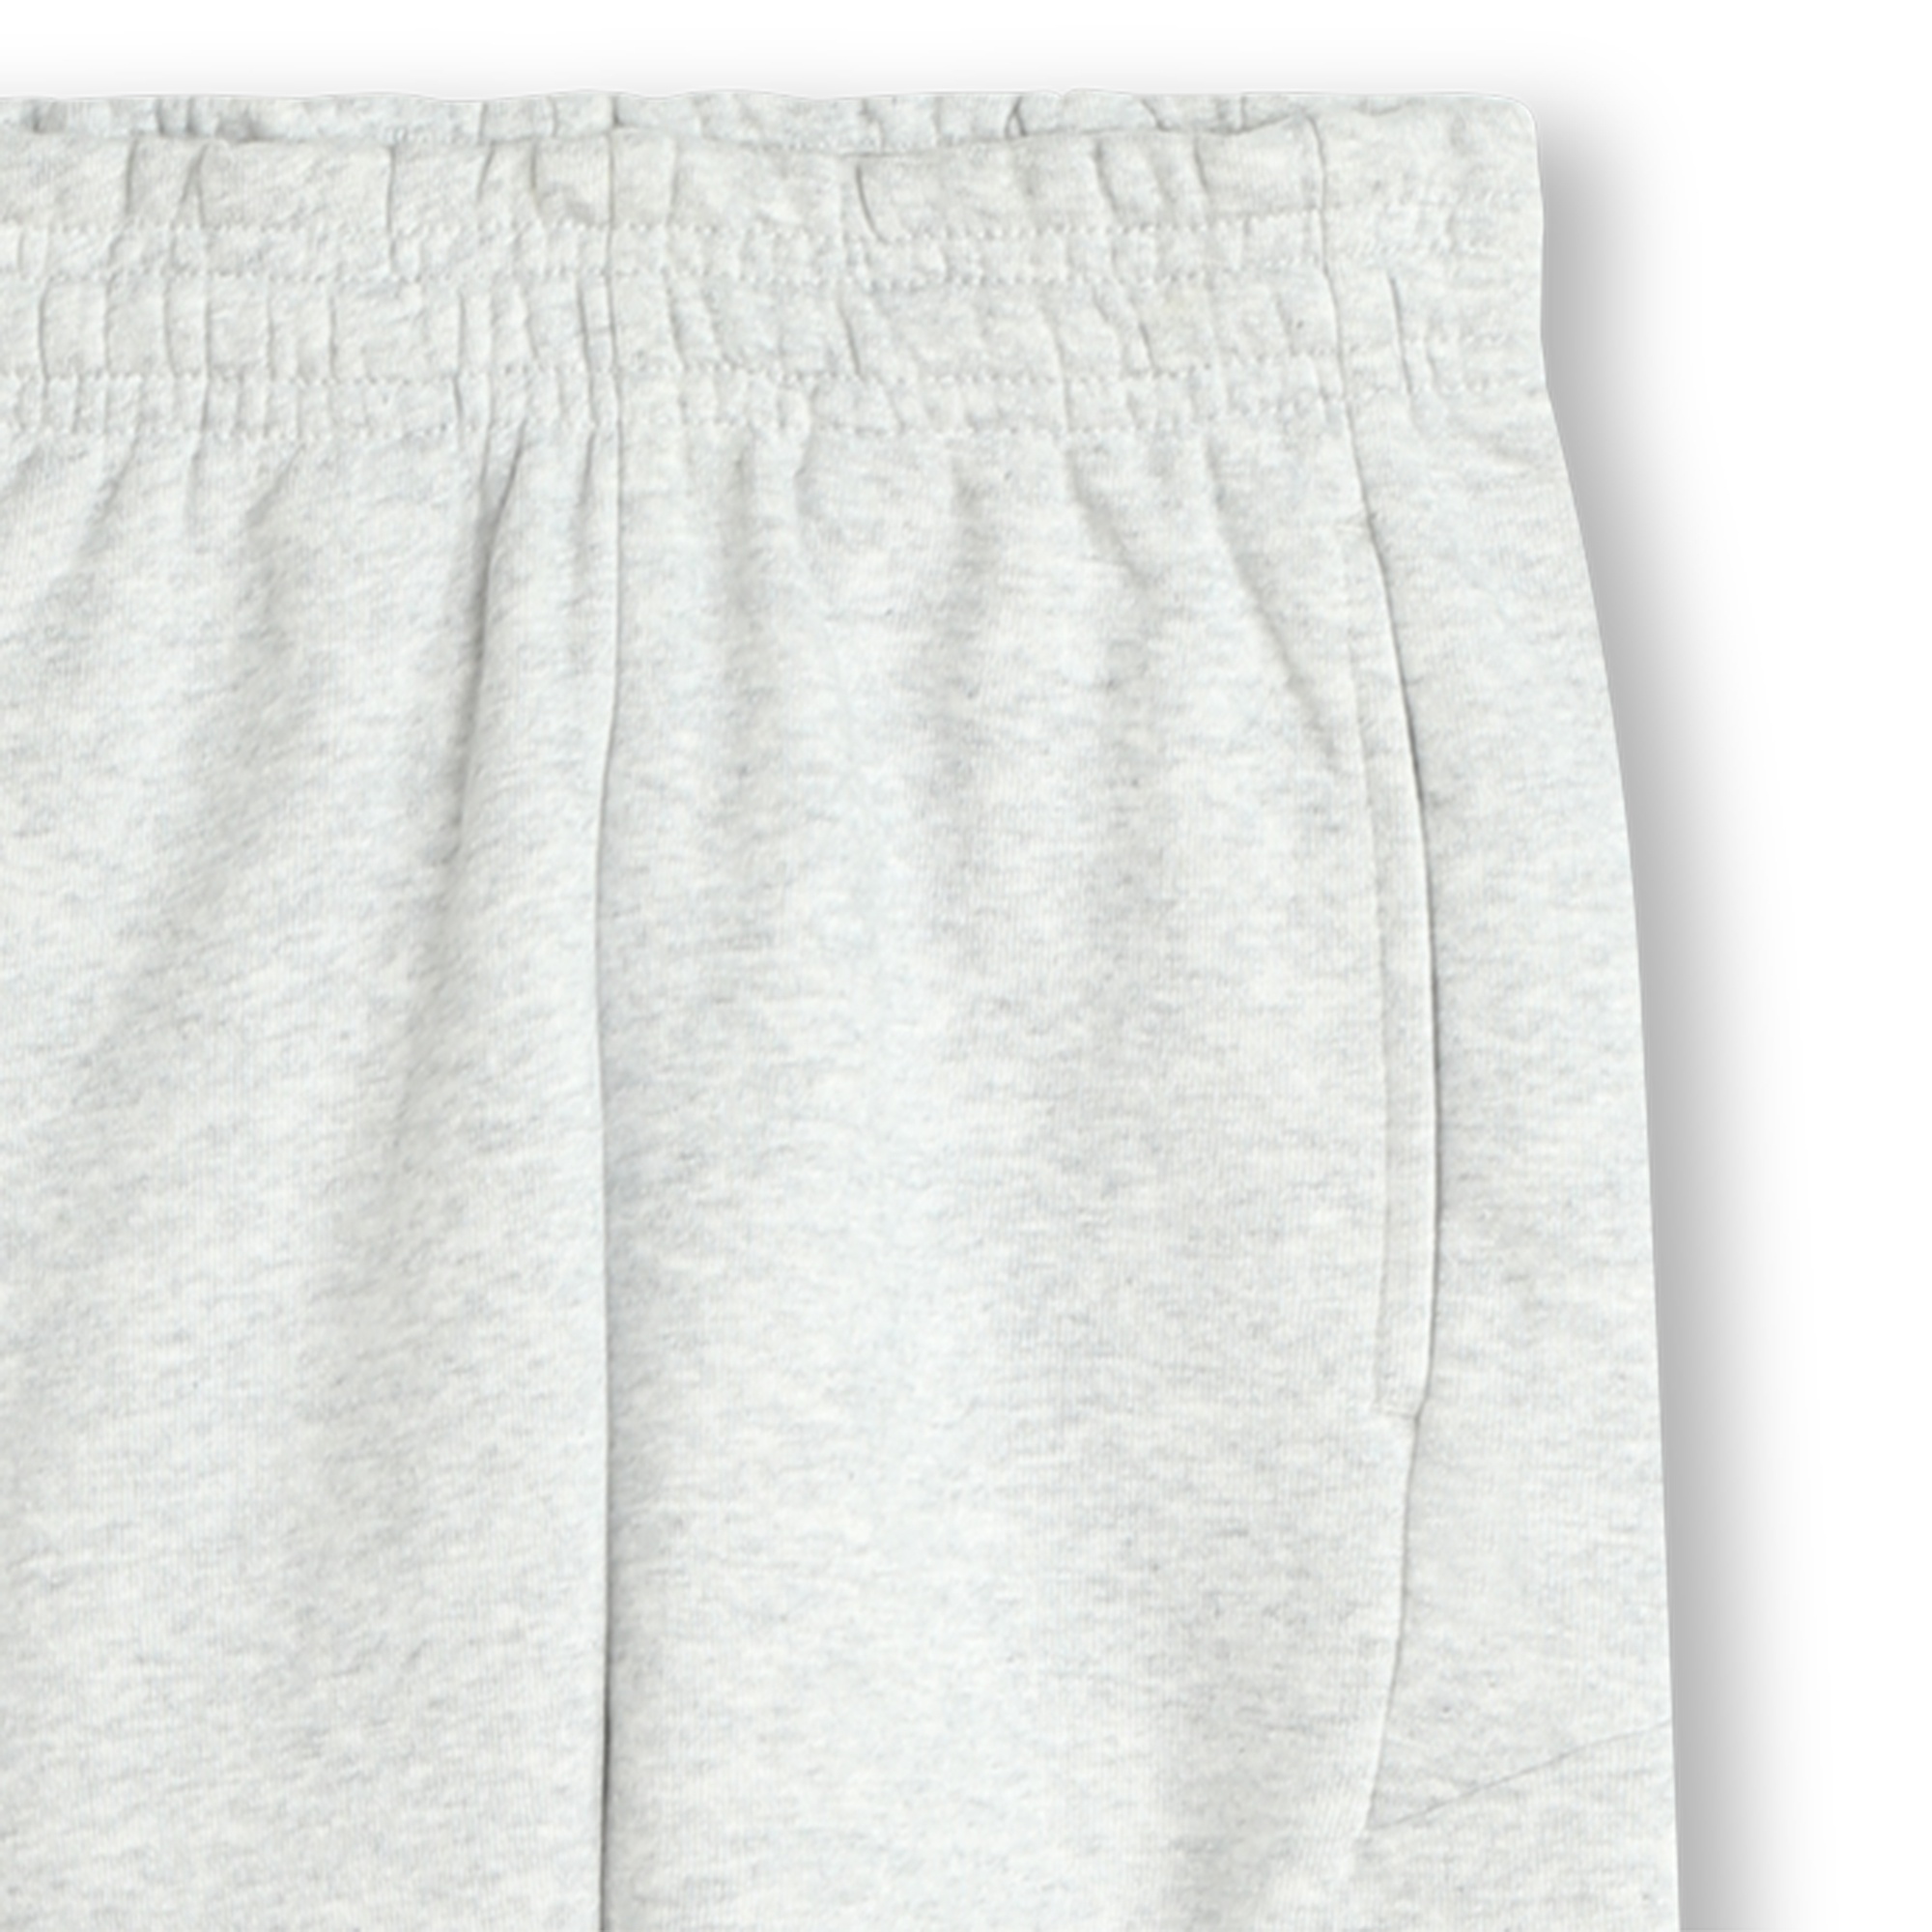 Fleece jogging trousers BOSS for BOY